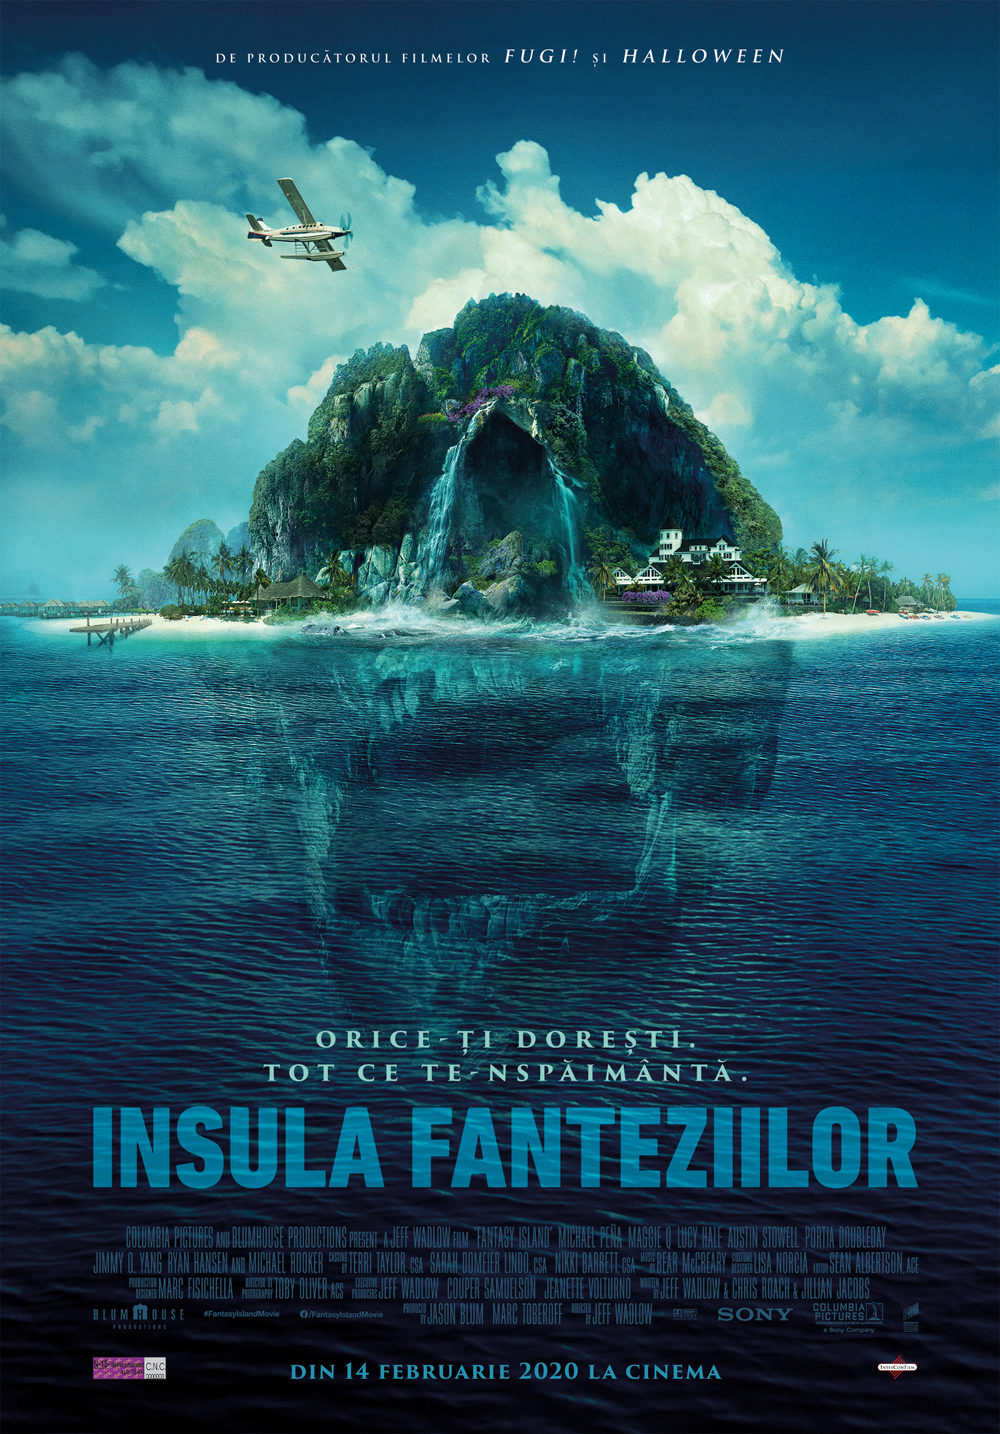 Fantasy Island - Insula fanteziilor (2020) - Film - CineMagia.ro